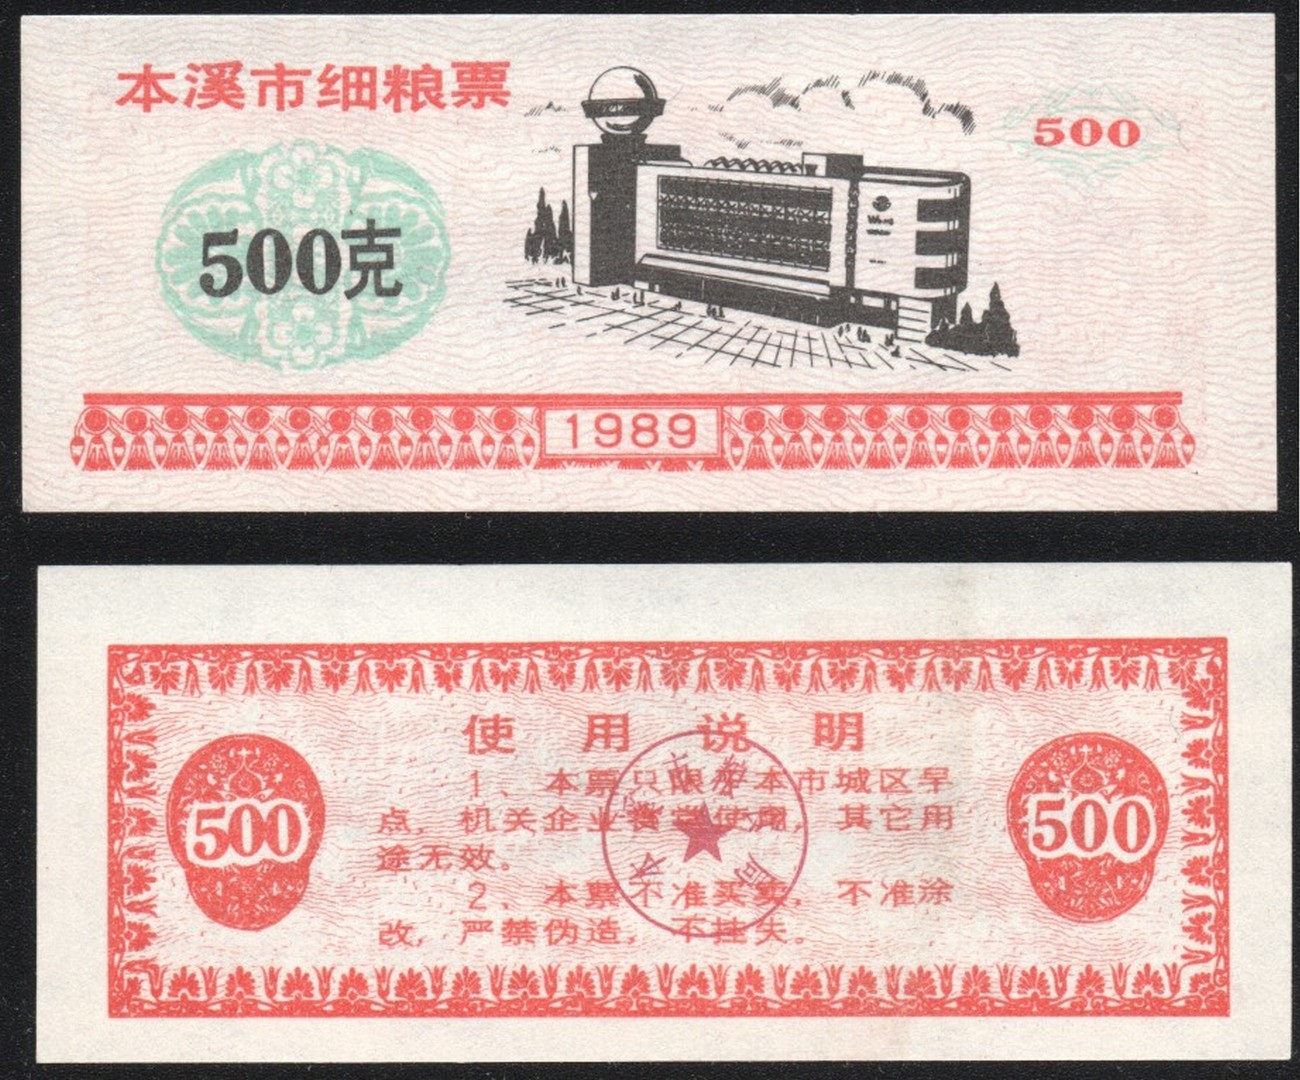 Спид энд кэш 500. 10000 Юаней. Рисовые деньги продовольственные талоны Китая фото коллаж.